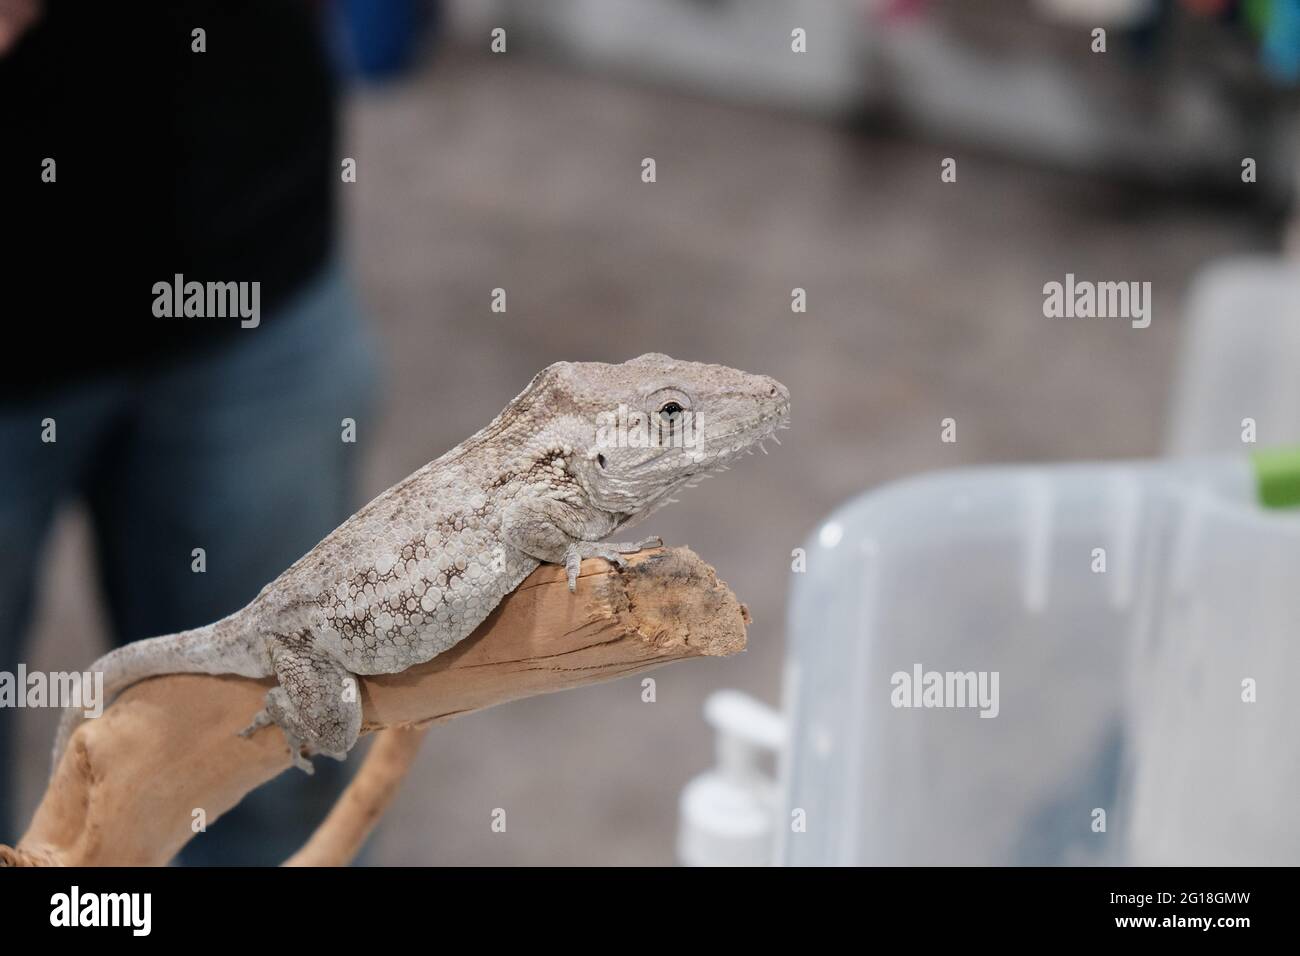 Eine Art Eidechse fand ich während einer Tierausstellung in der Innenstadt von Lafayette Louisiana. Vielleicht ein Gecko, Ich habe keine Ahnung. Weiße Haut. Er war hübsch Stockfoto